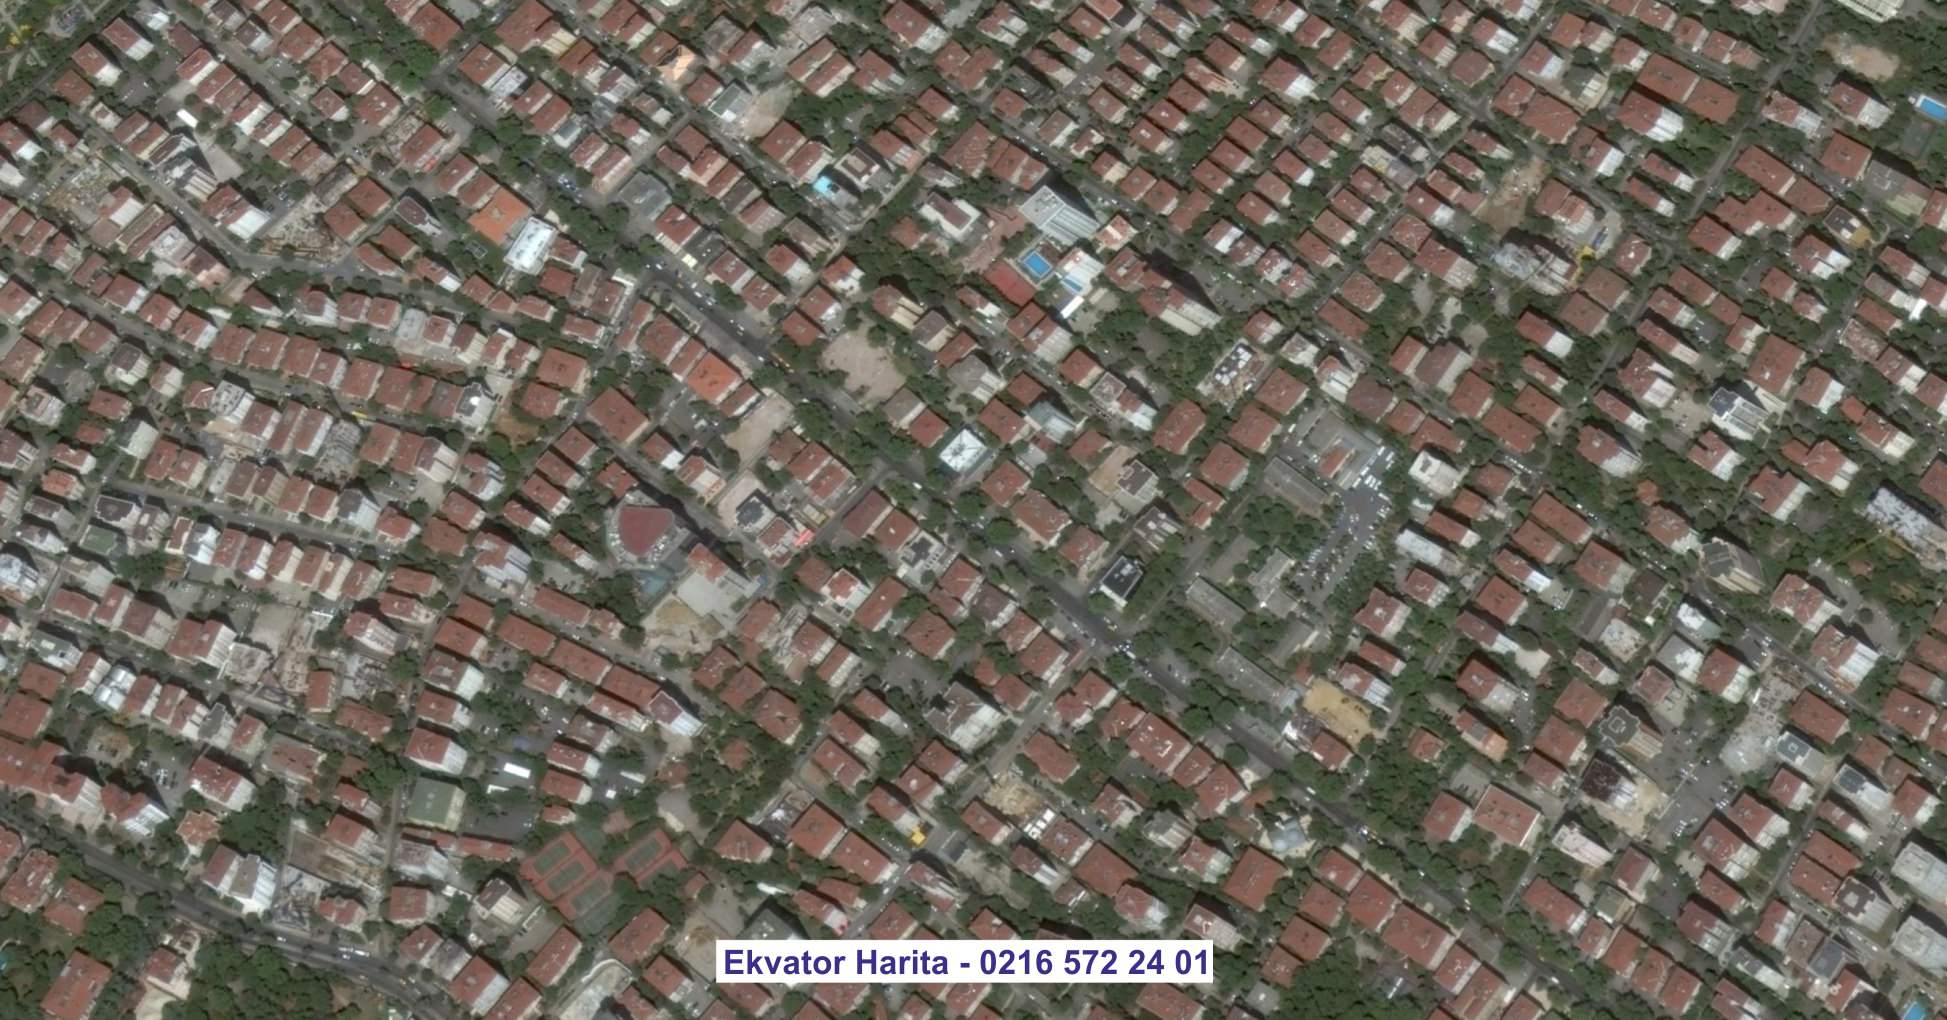 Uşak Uydu Görüntüsü Örnek Fotoğrafı